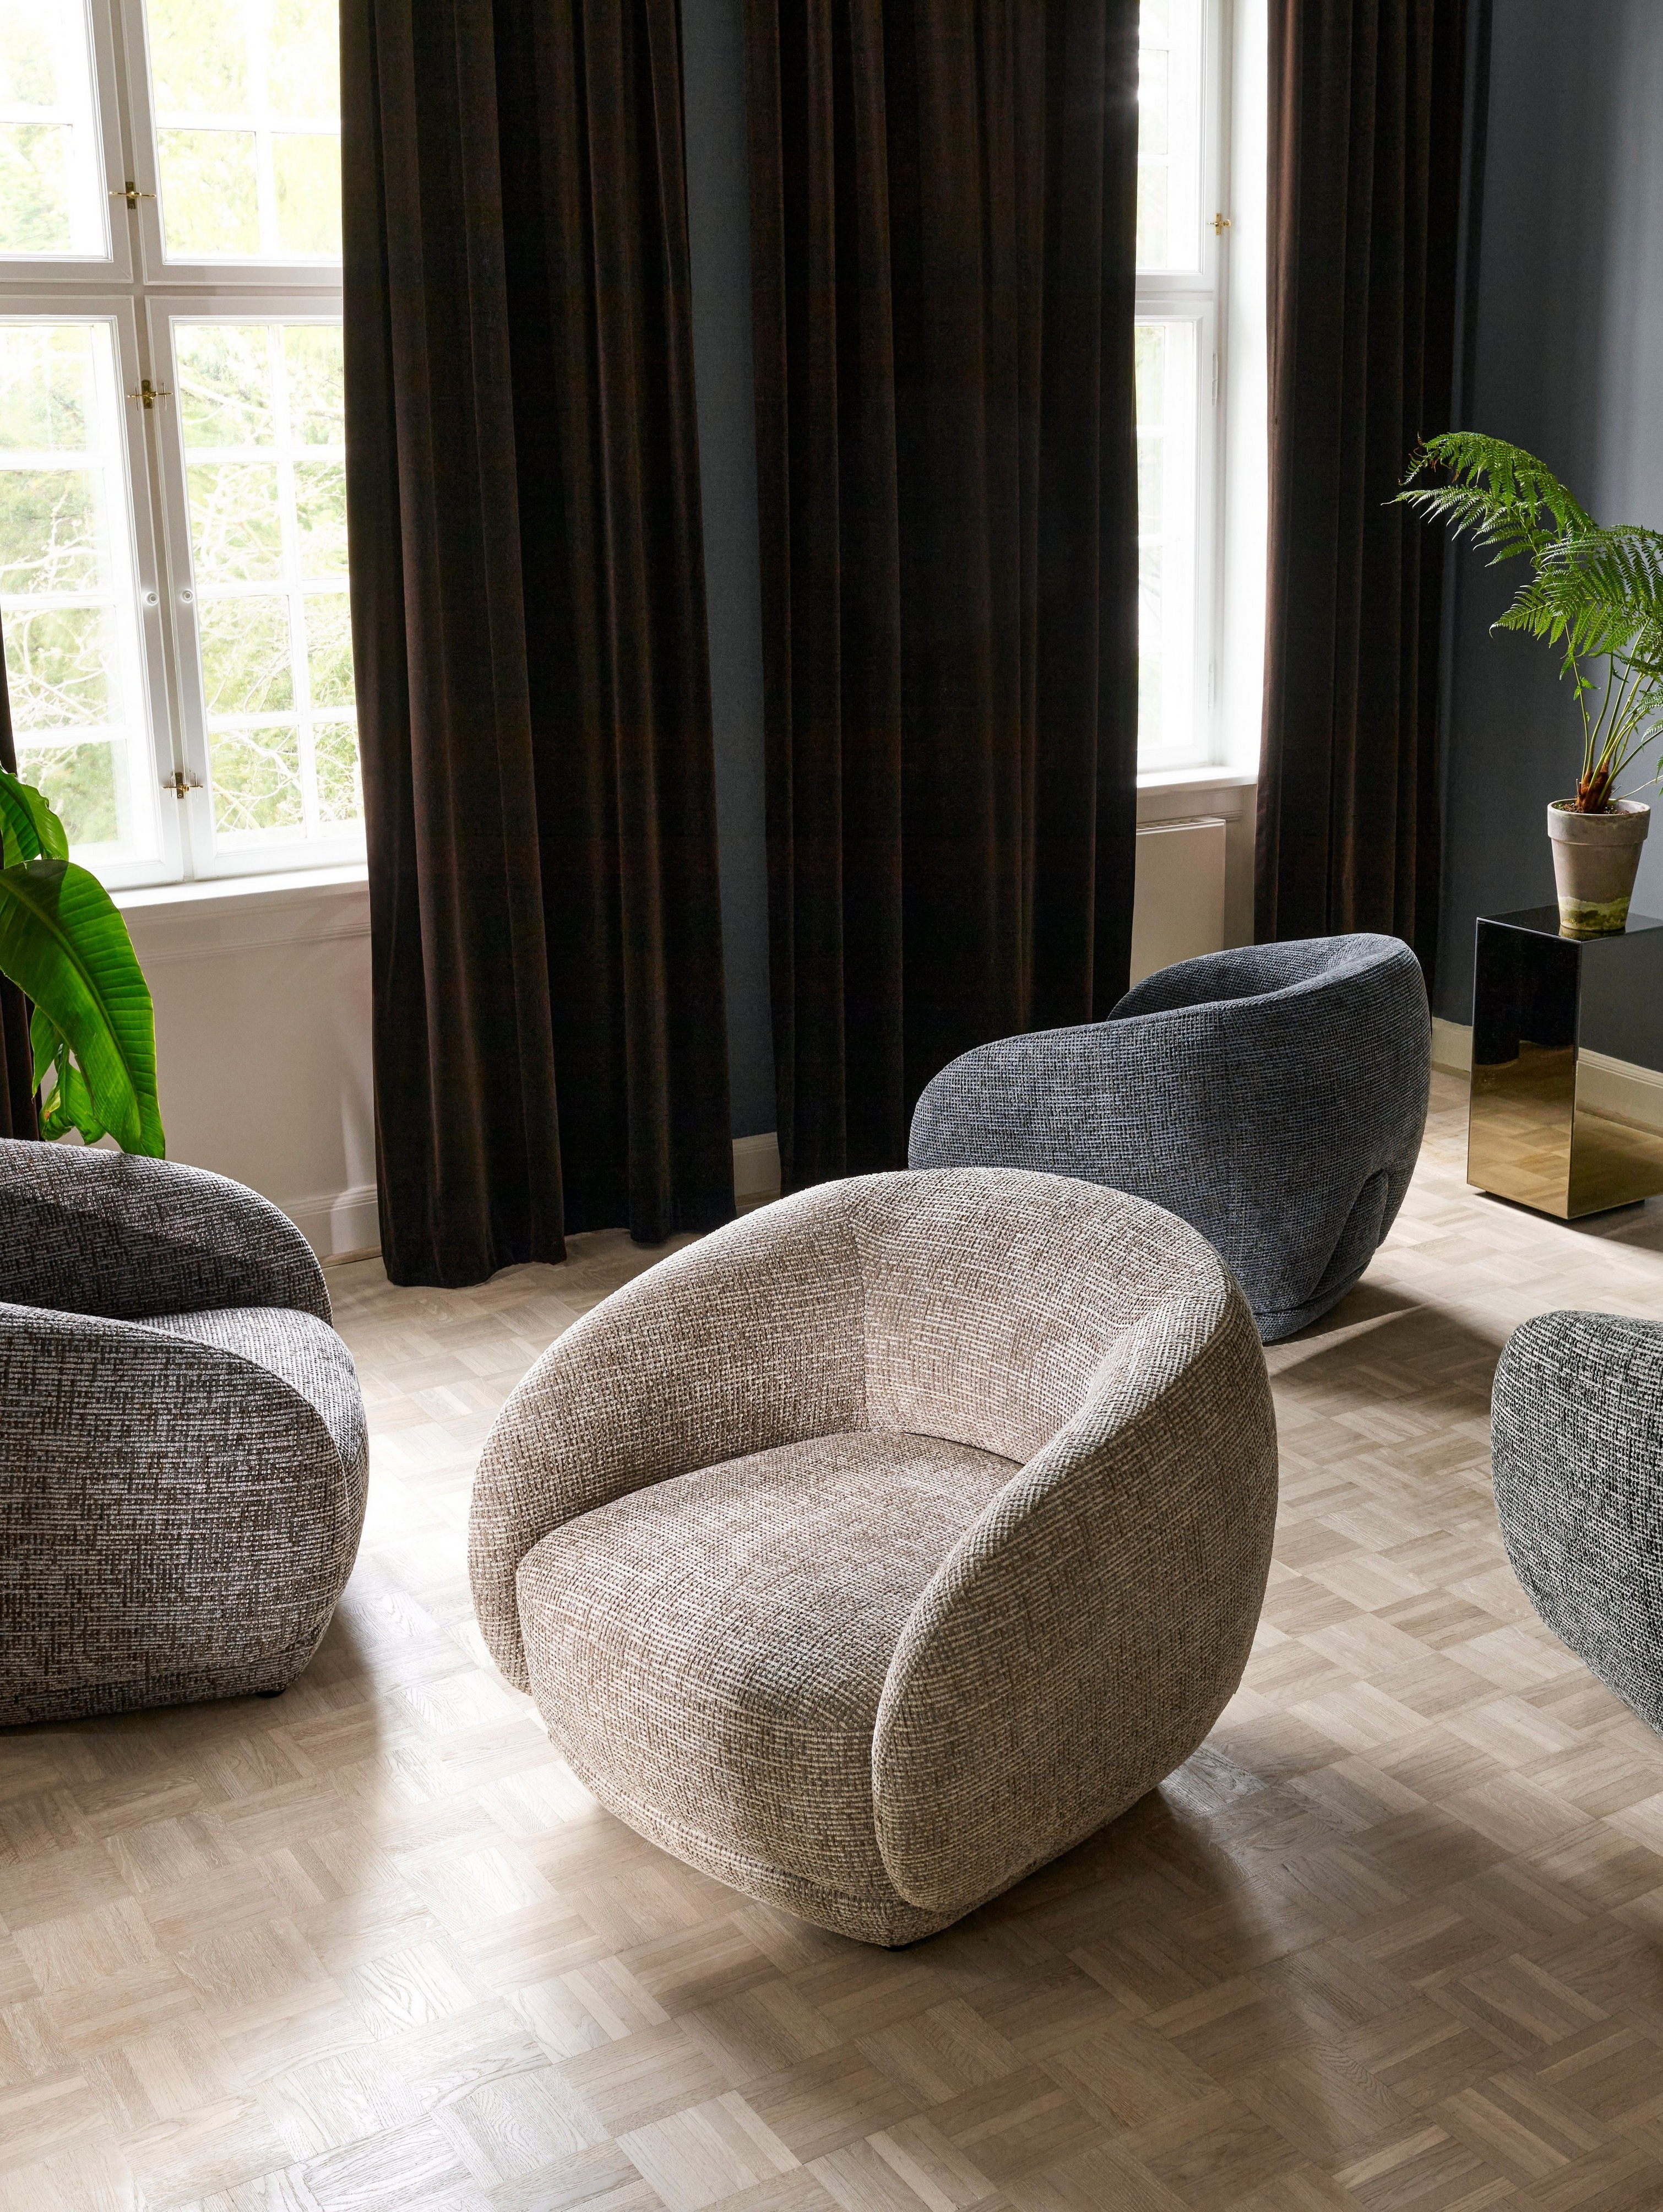 Quatro cadeiras Bolzano numa sala de estar colocadas em direções aleatórias.